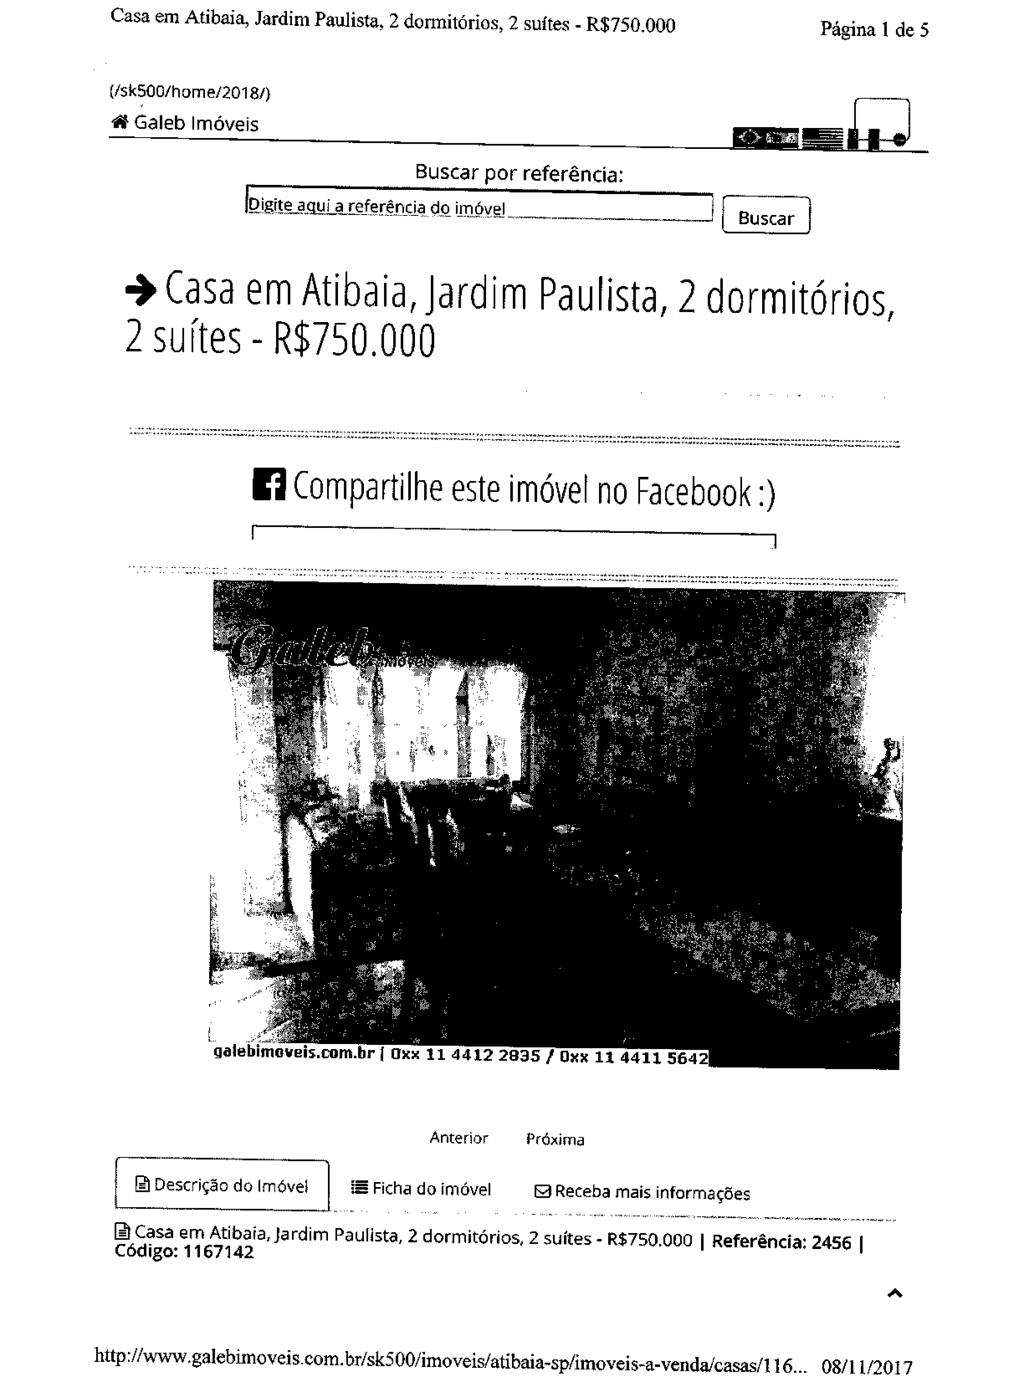 fls. 396 Este documento é cópia do original, assinado digitalmente por JANAINA ESTEVO CORREA, liberado nos autos em 04/12/2017 às 16:40.